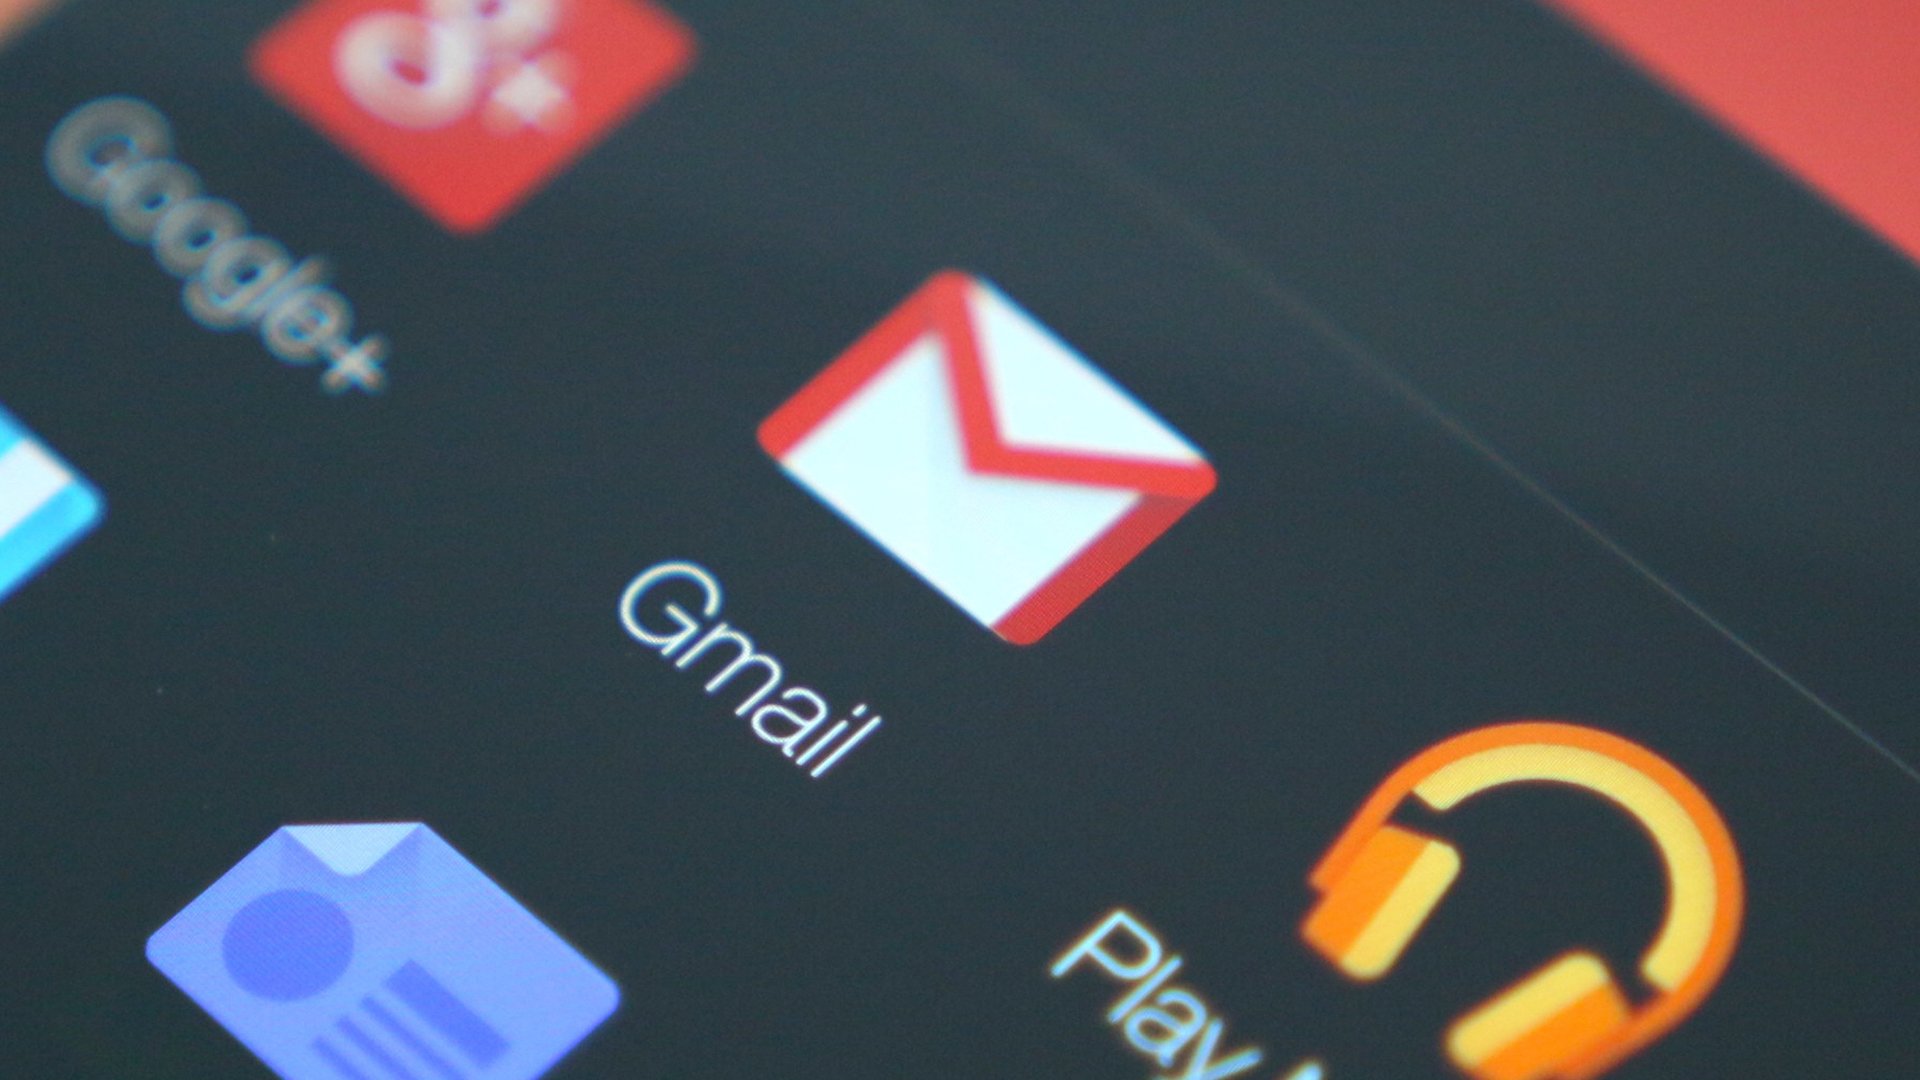 Cara memindahkan kontak dari gmail ke Android